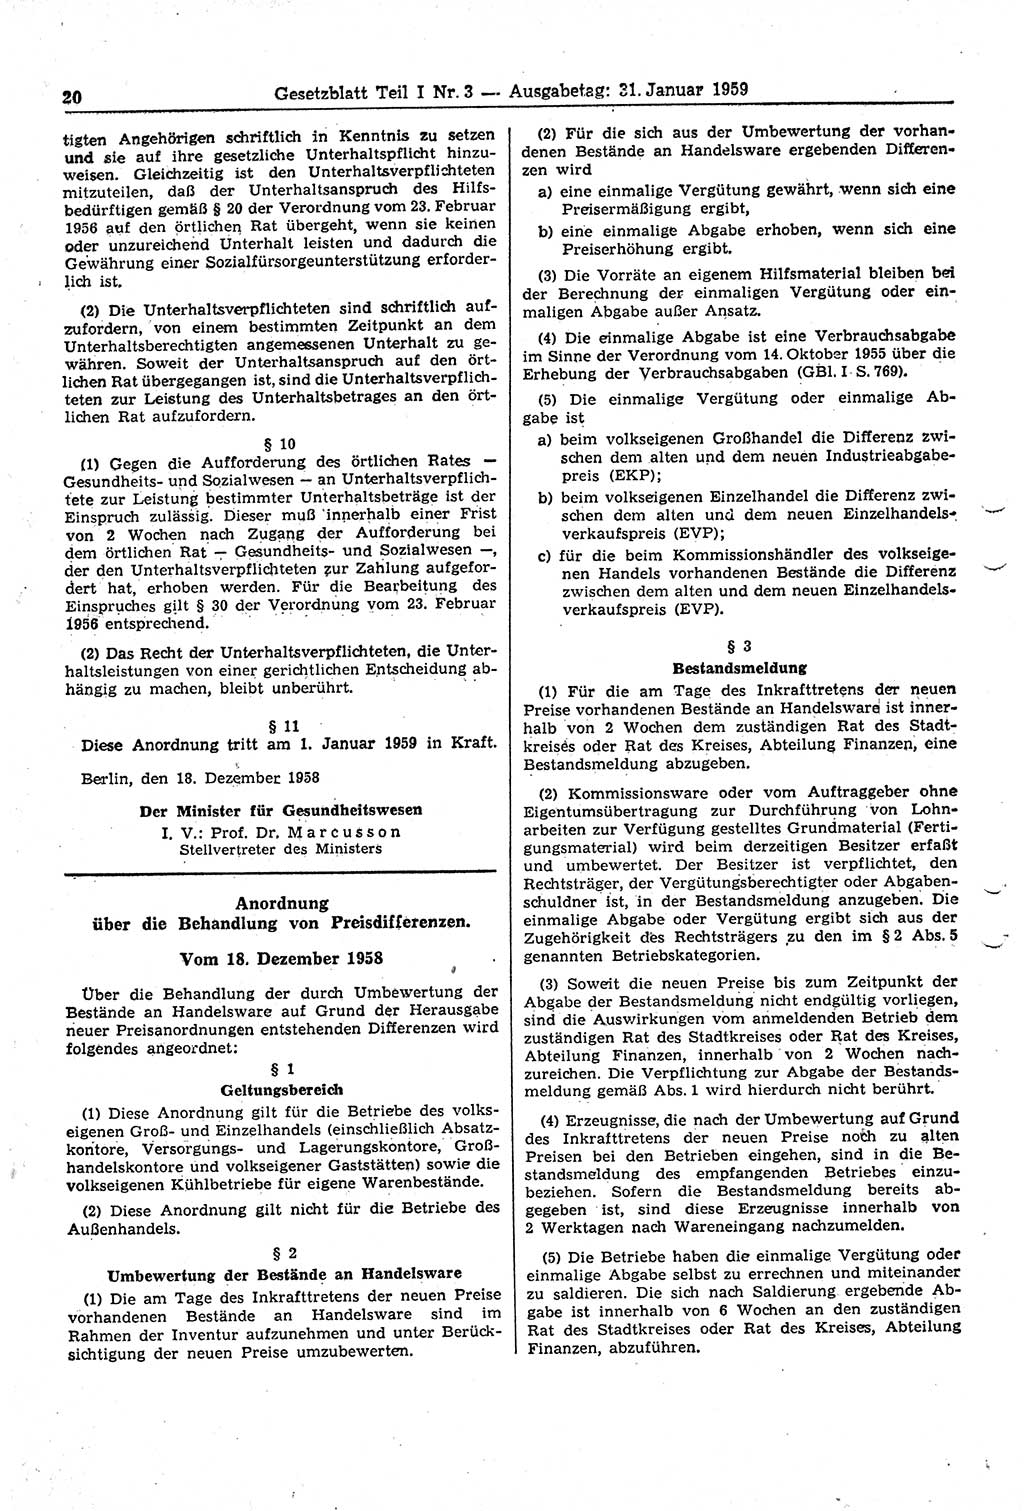 Gesetzblatt (GBl.) der Deutschen Demokratischen Republik (DDR) Teil Ⅰ 1959, Seite 20 (GBl. DDR Ⅰ 1959, S. 20)